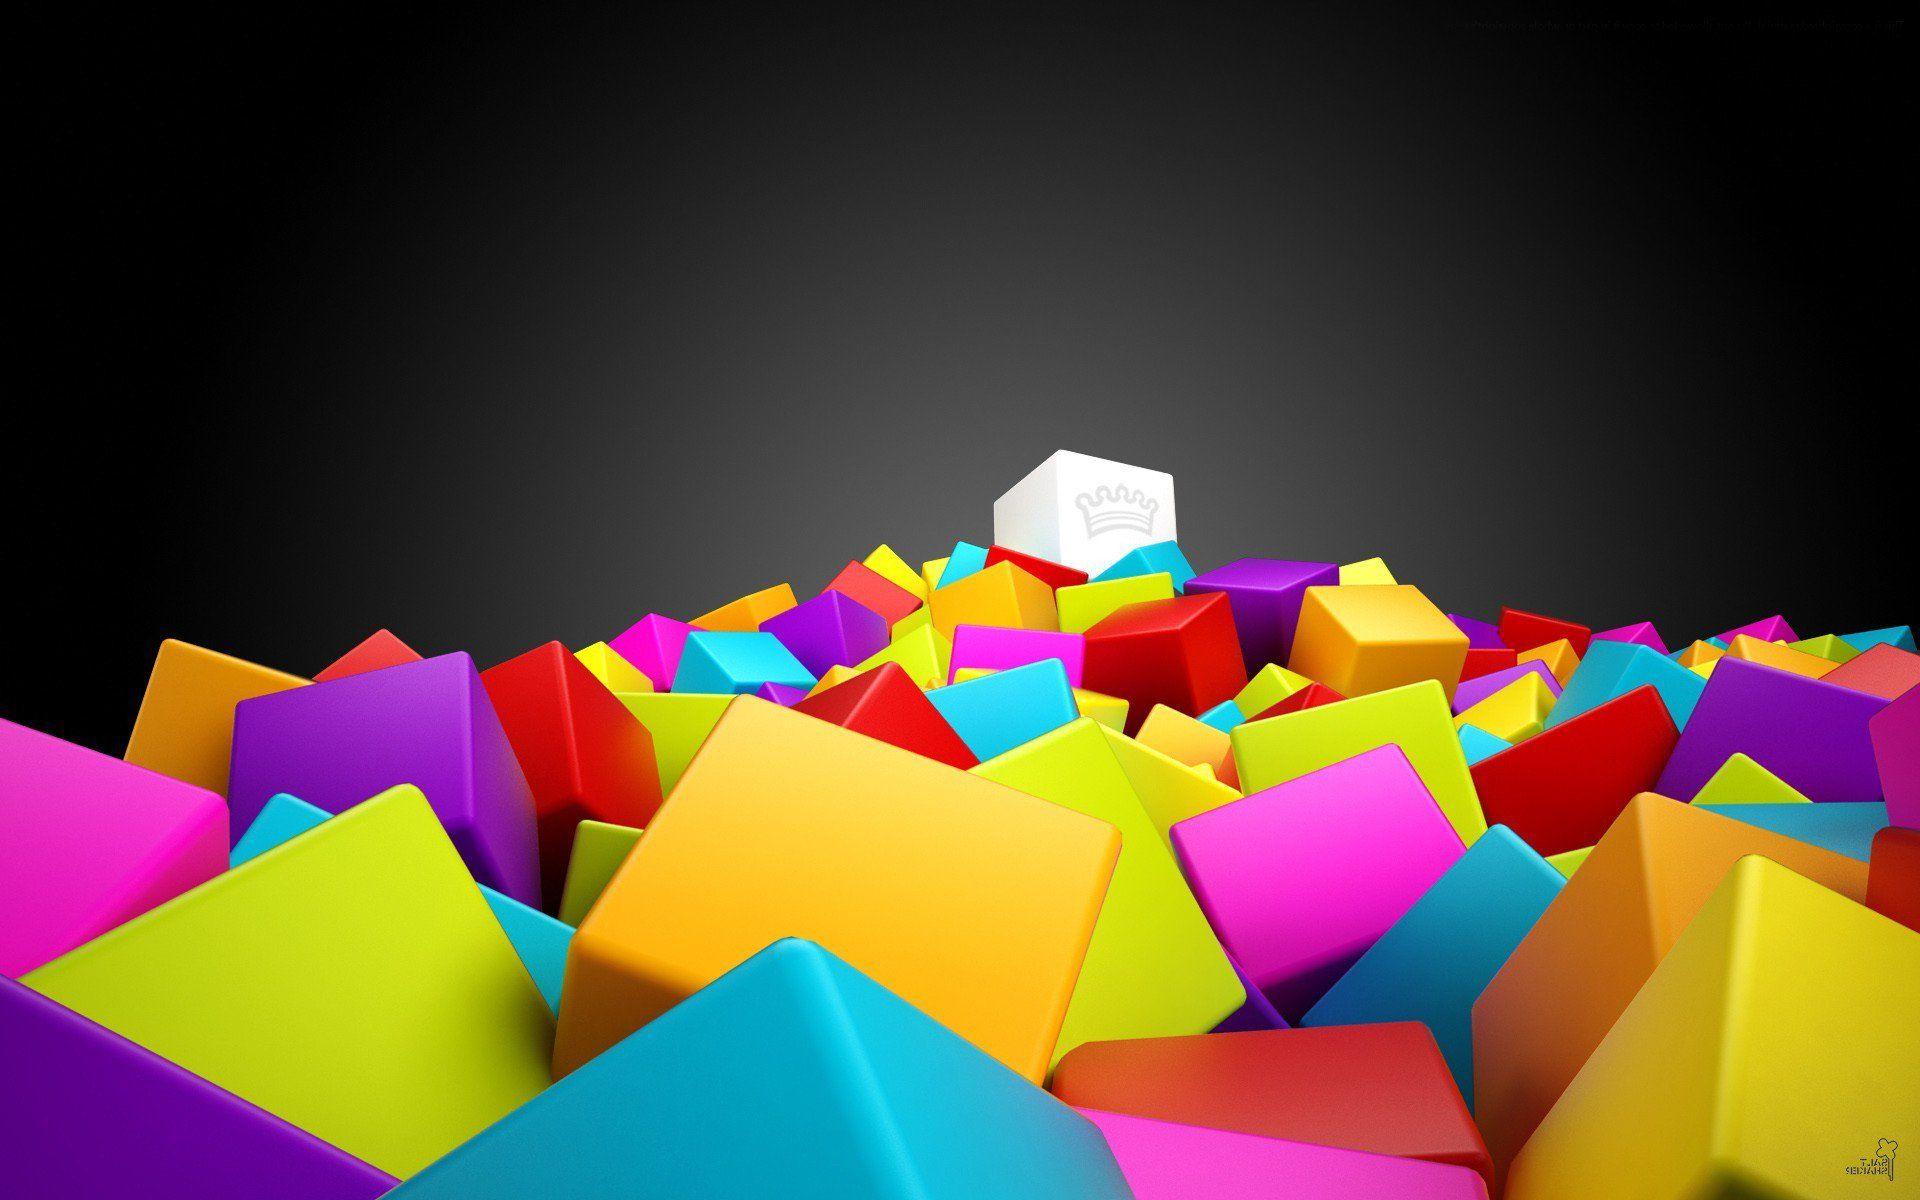 3D Cubes 2048x1152 Resolution HD 4k Wallpaper, Image